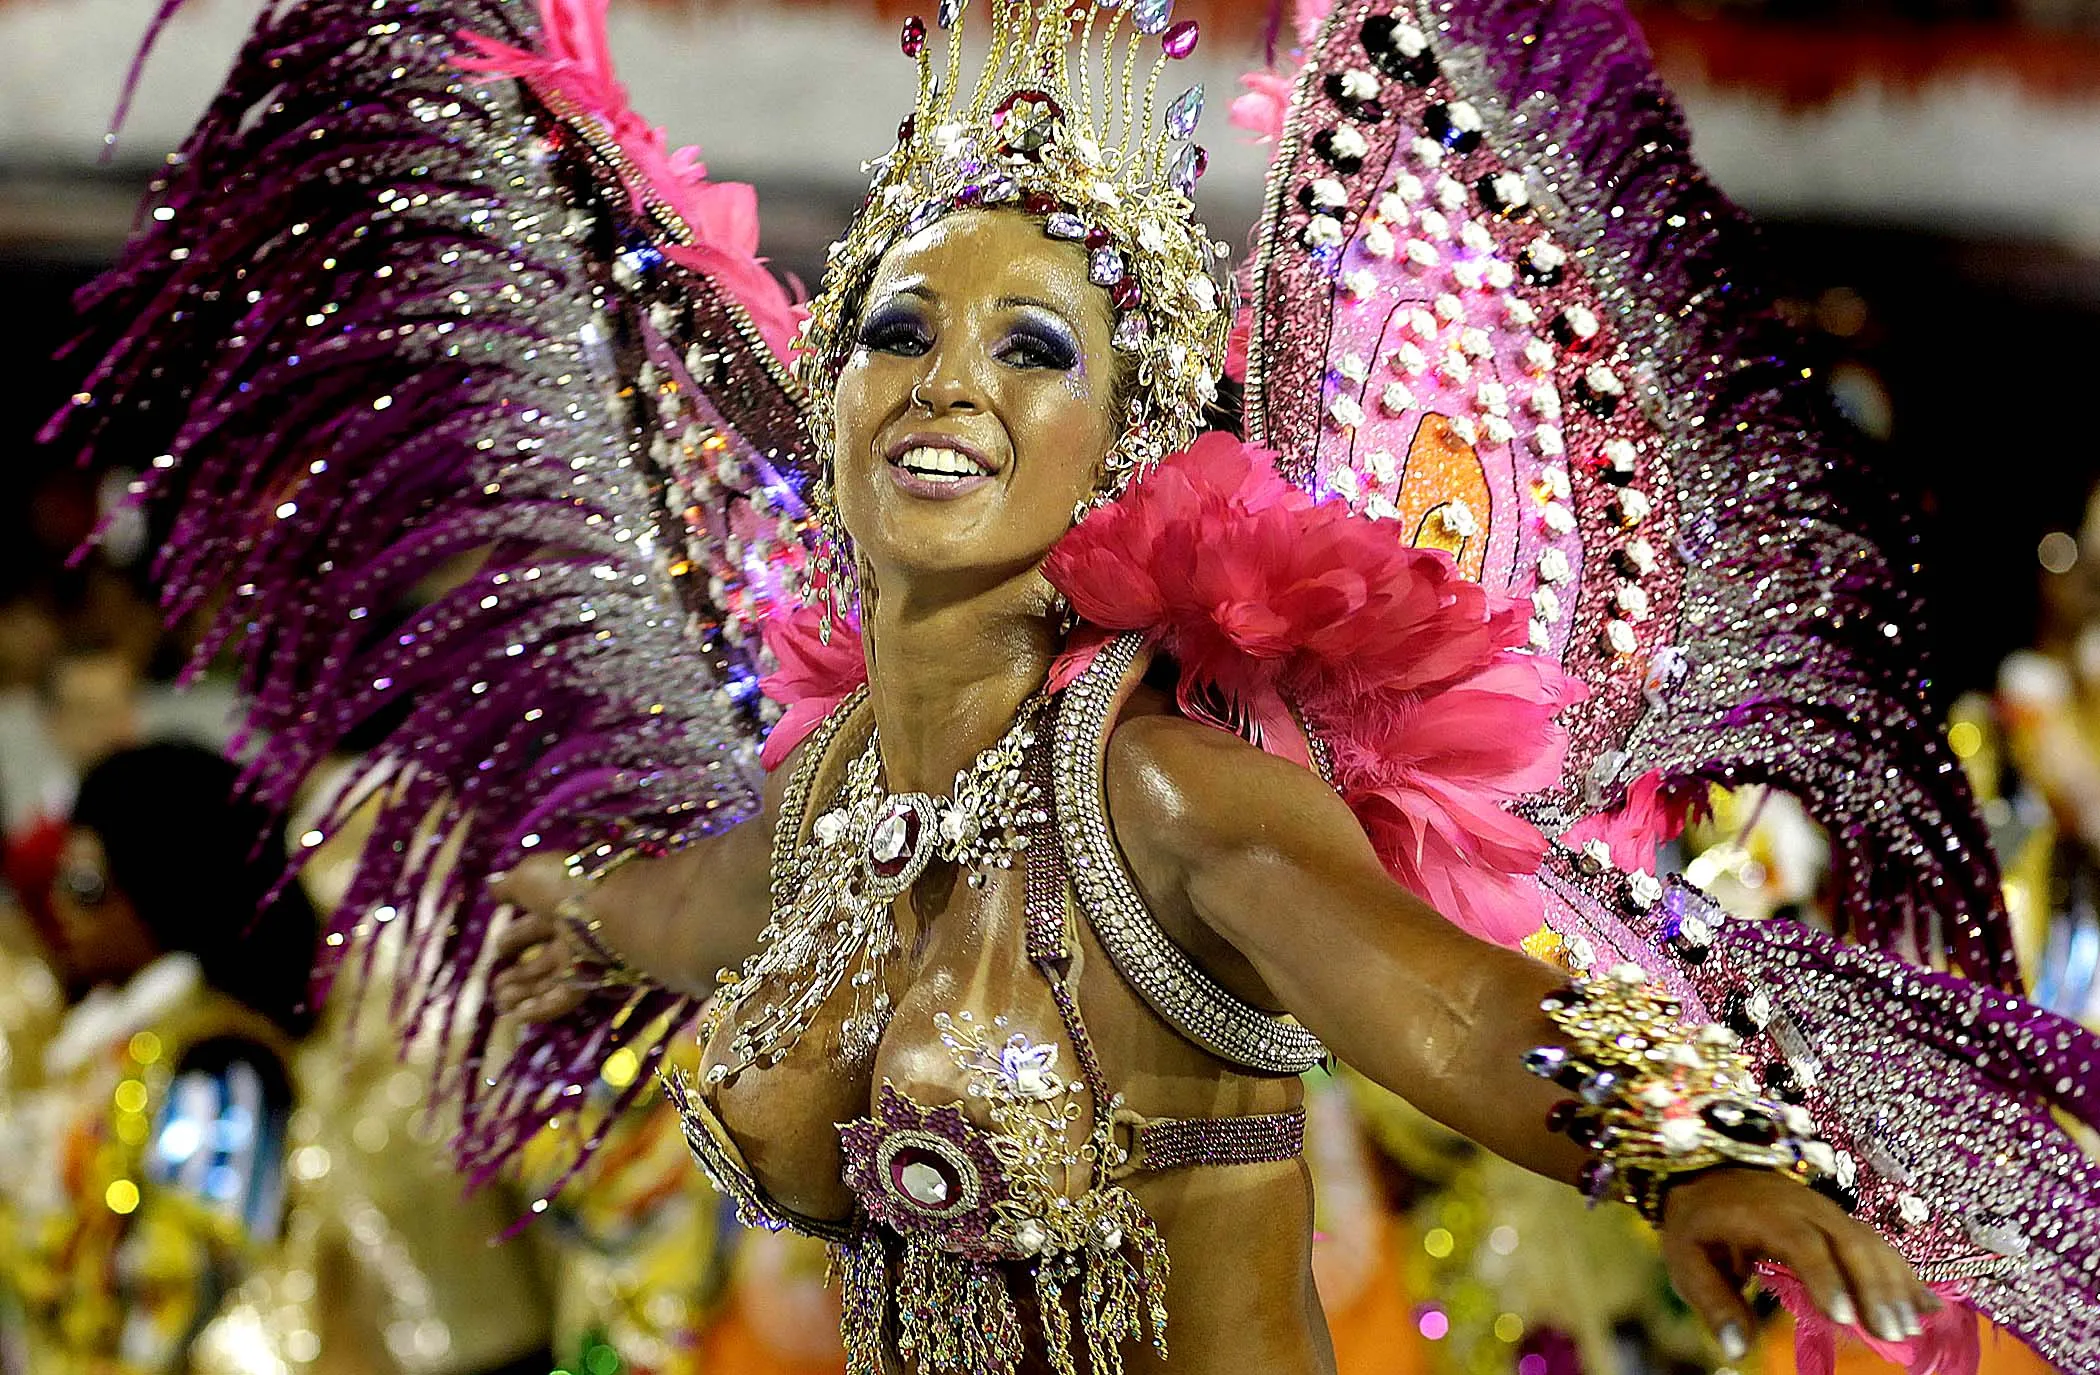 Karnaval. Карнавал в Рио-де-Жанейро. Карнавал в Рио-де-Жанейро (бразильский карнавал). Карнавал в риодеженейро. Карнавал в Рио-де-Жанейро (бразильский карнавал) игрушки.